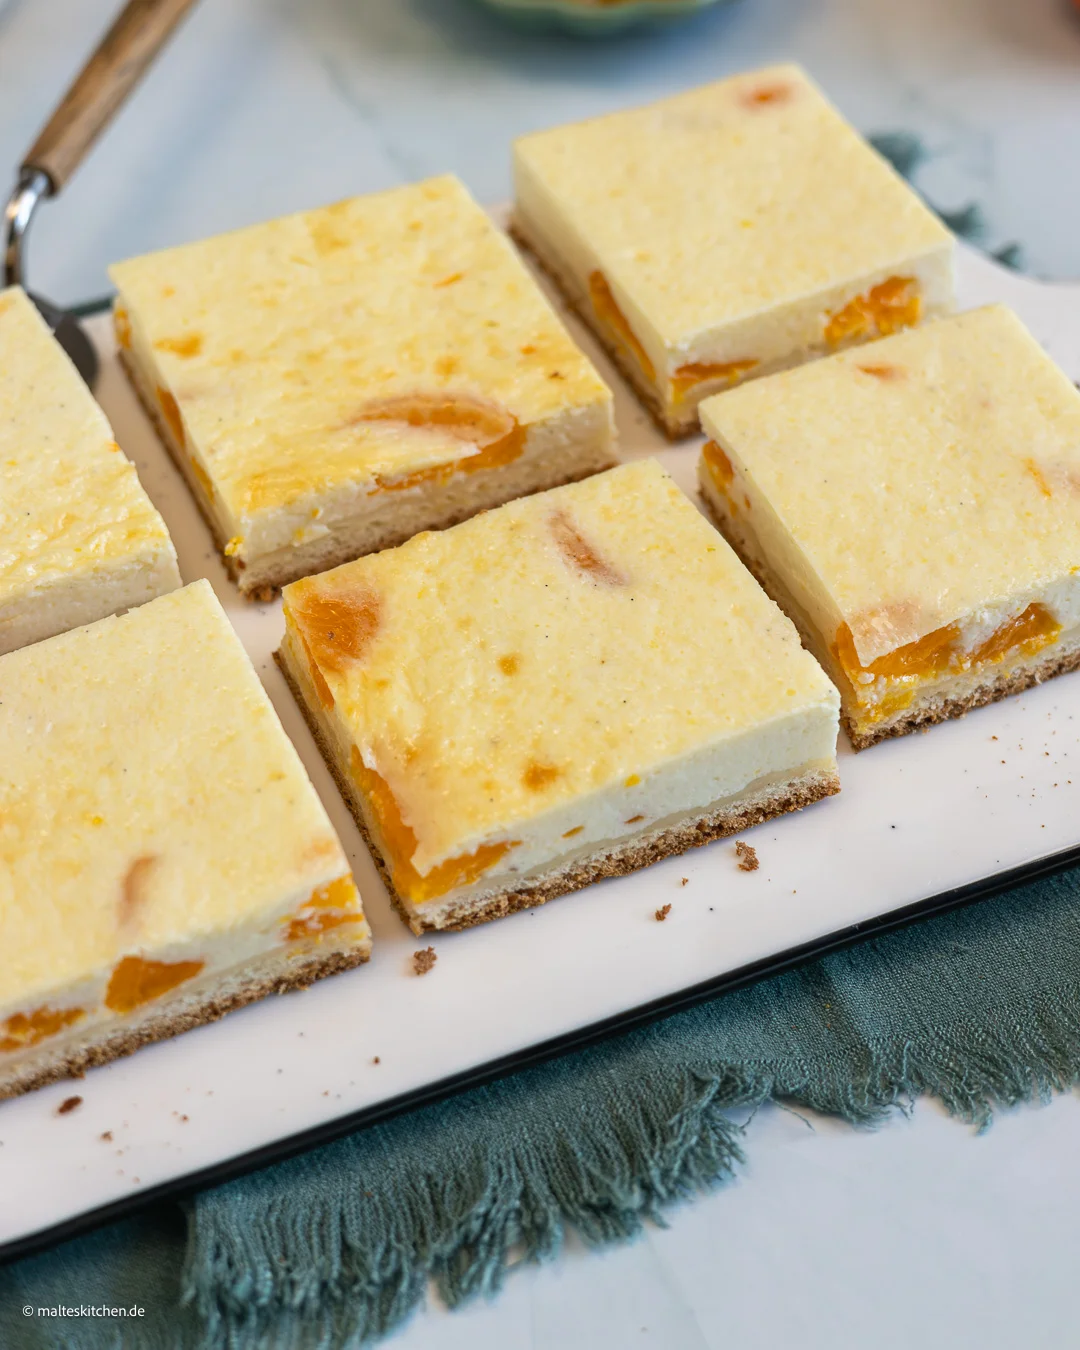 Délicieux gâteau au fromage blanc du plateau.